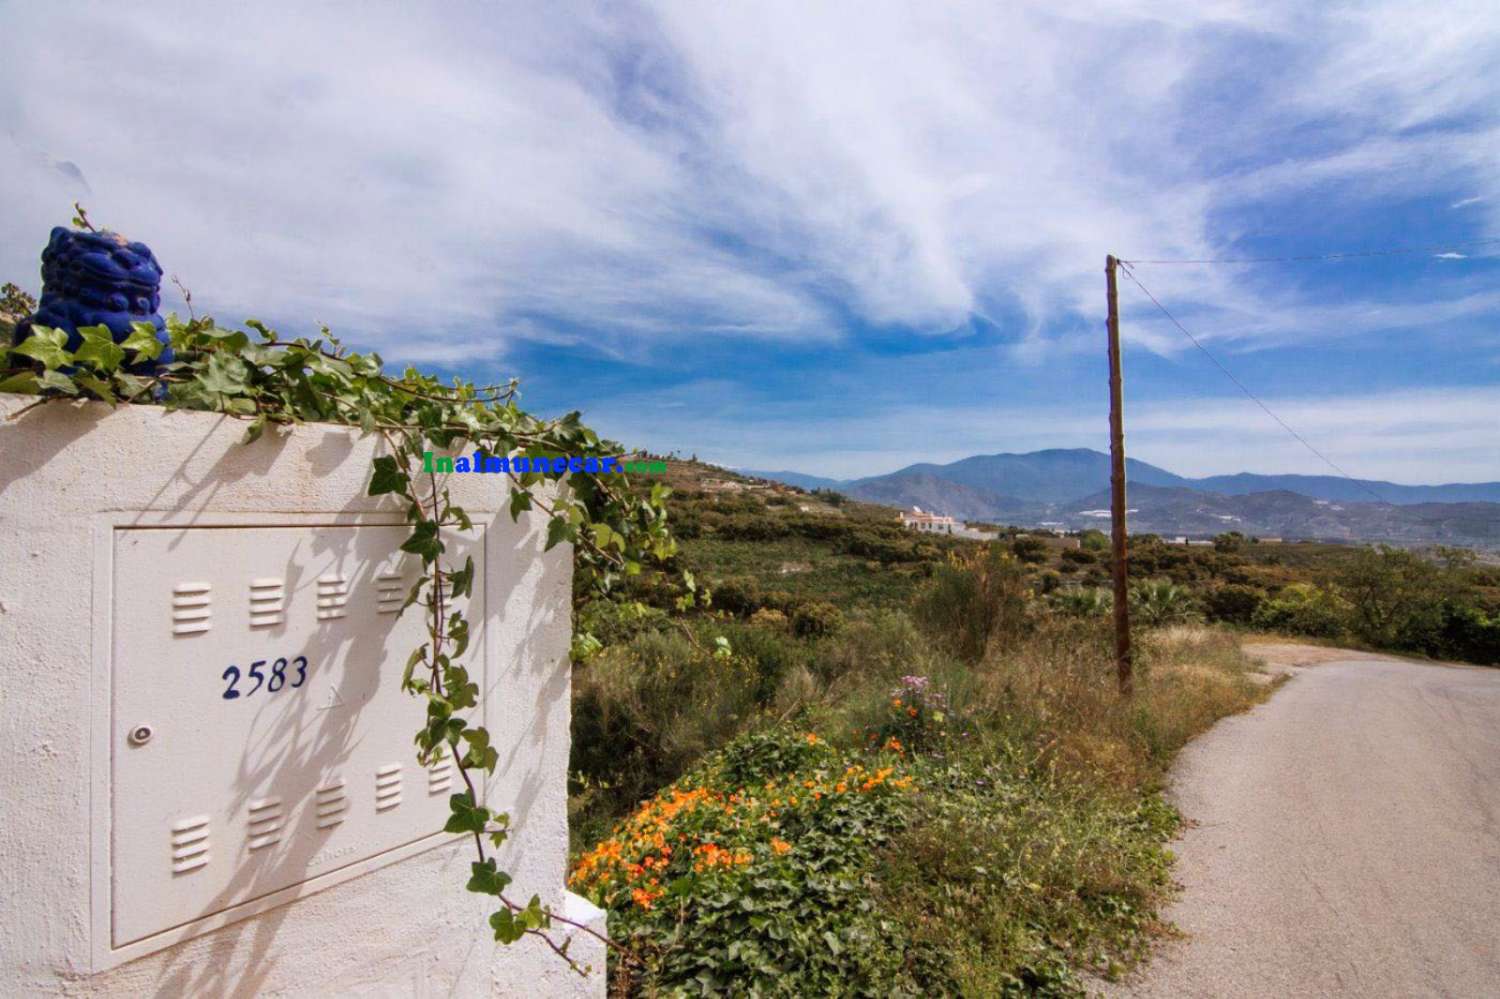 Stadtgrundstück zum Verkauf in Monte de los Almendros mit herrlichem Blick auf das Meer und die Berge